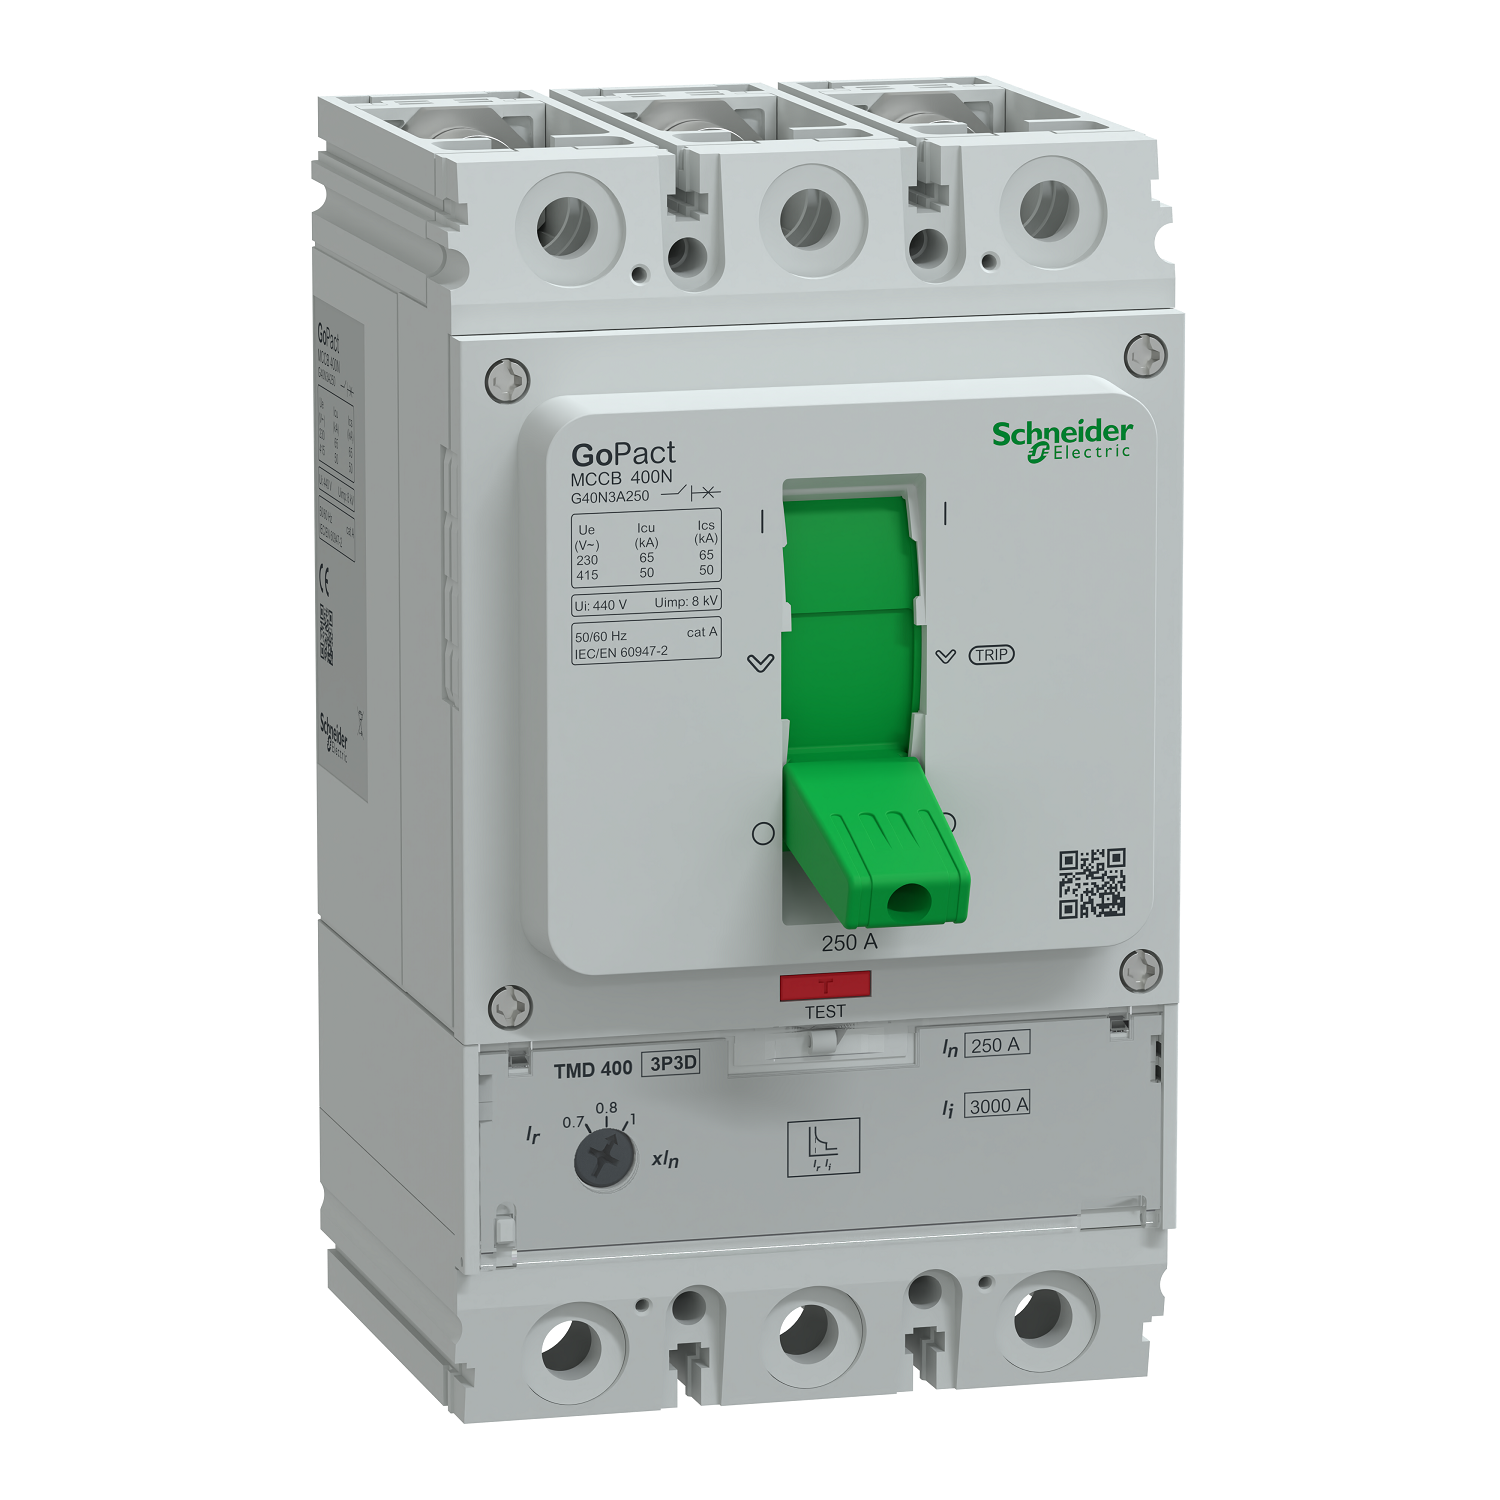 Circuit breaker, GoPact MCCB 400, 3 poles, 50kA at 415VAC, 250A rating, TMD trip unit, adjustable thermal protection